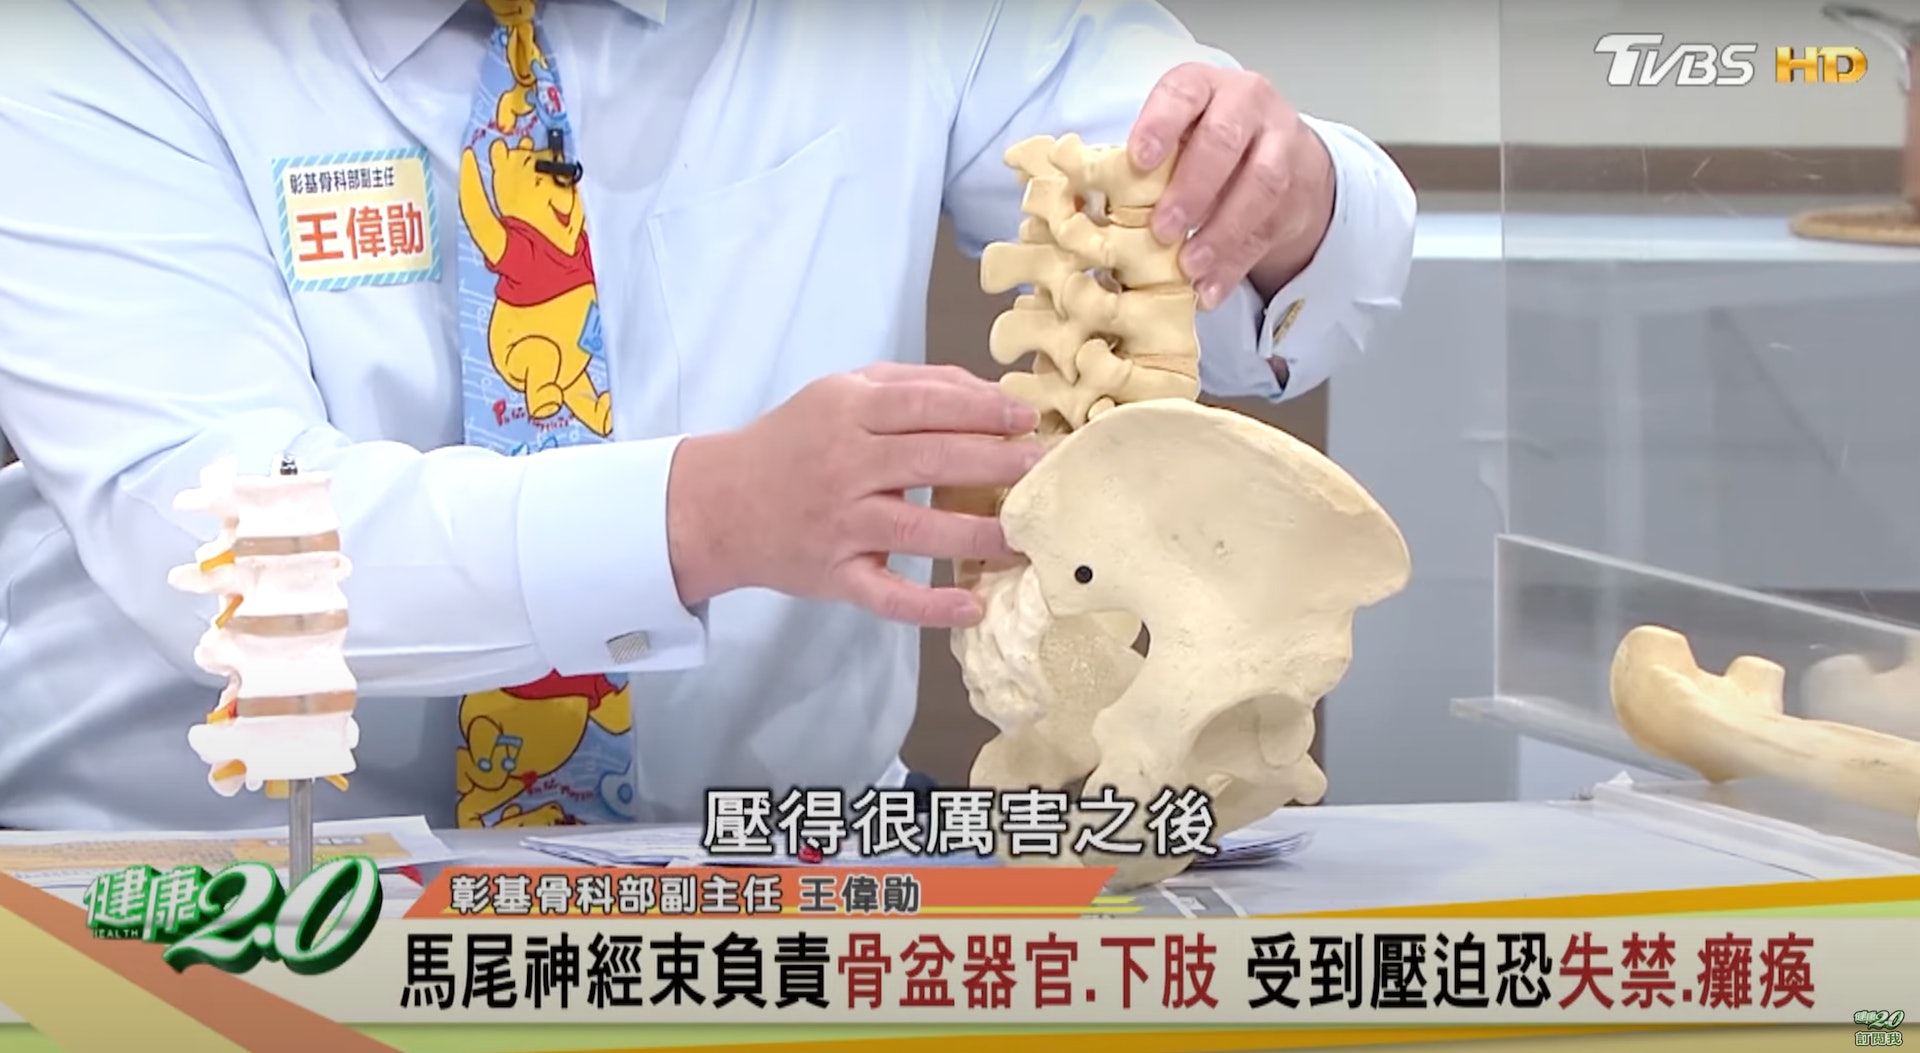 骨科副主任 王偉勛醫師解說正常脊椎與被壓迫的脊椎分別（截自YouTube@健康2.0《這種下背痛不能等 馬尾症候群影響解尿.排便.性功能》）